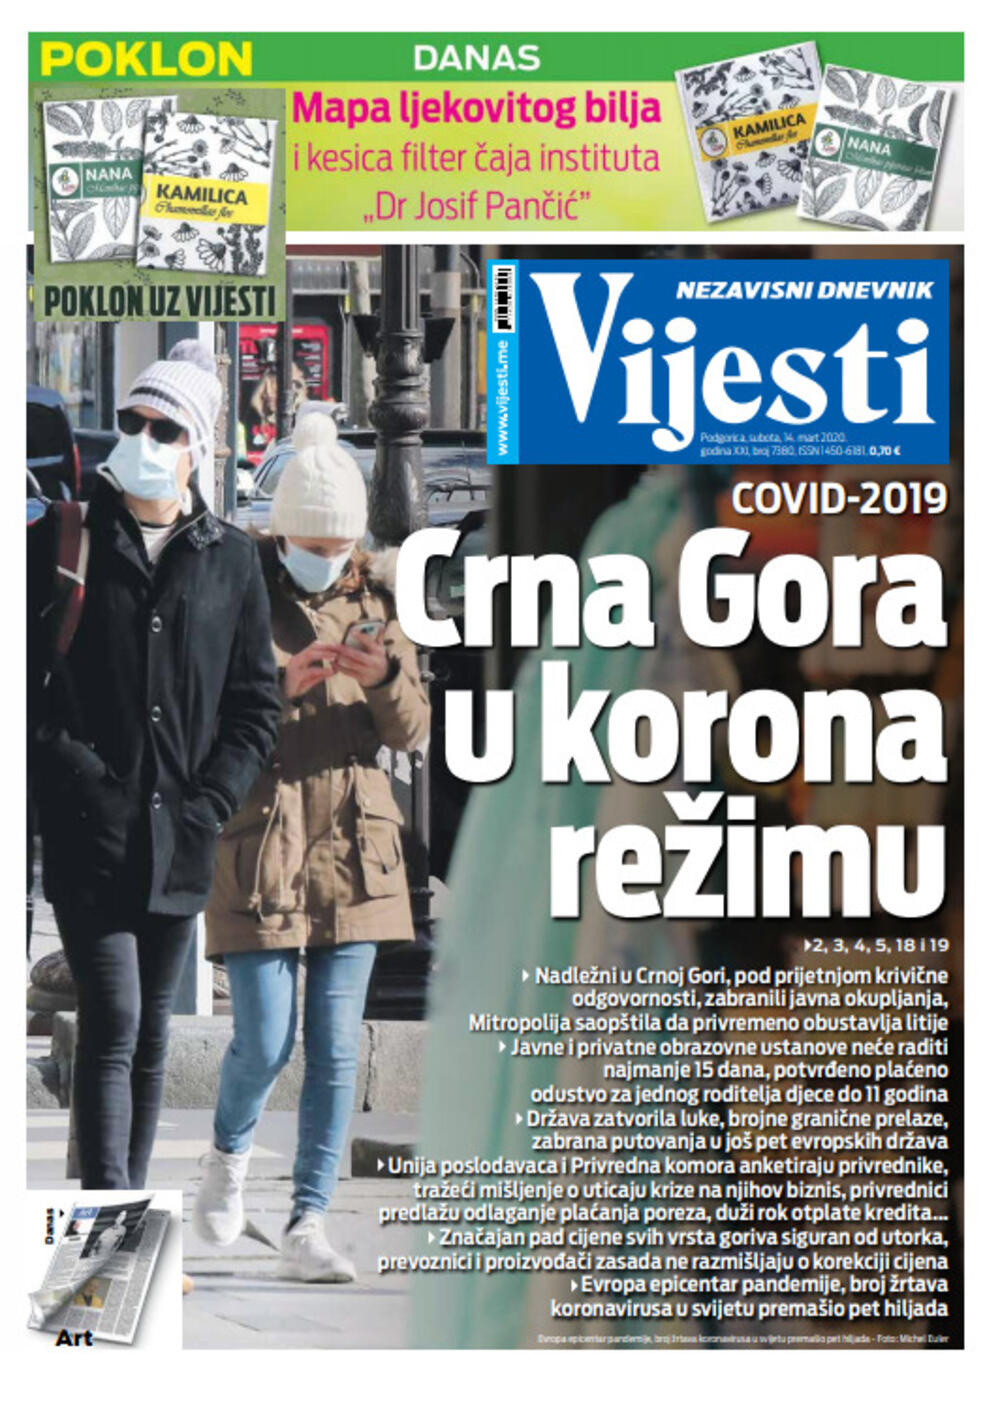 Naslovna strana "Vijesti" za 14. mart 2020. godine, Foto: "Vijesti"